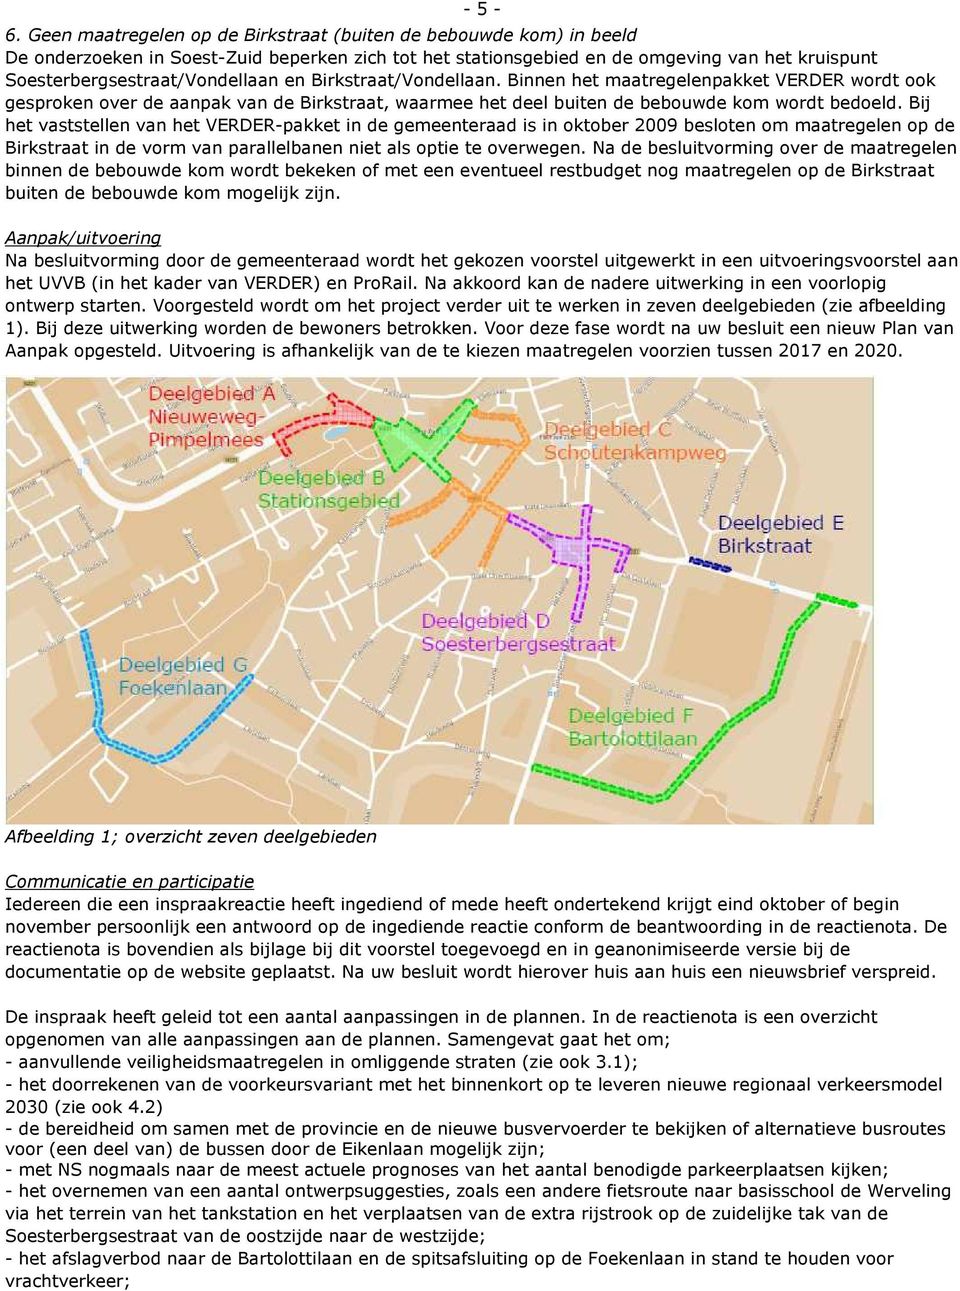 en Birkstraat/Vondellaan. Binnen het maatregelenpakket VERDER wordt ook gesproken over de aanpak van de Birkstraat, waarmee het deel buiten de bebouwde kom wordt bedoeld.